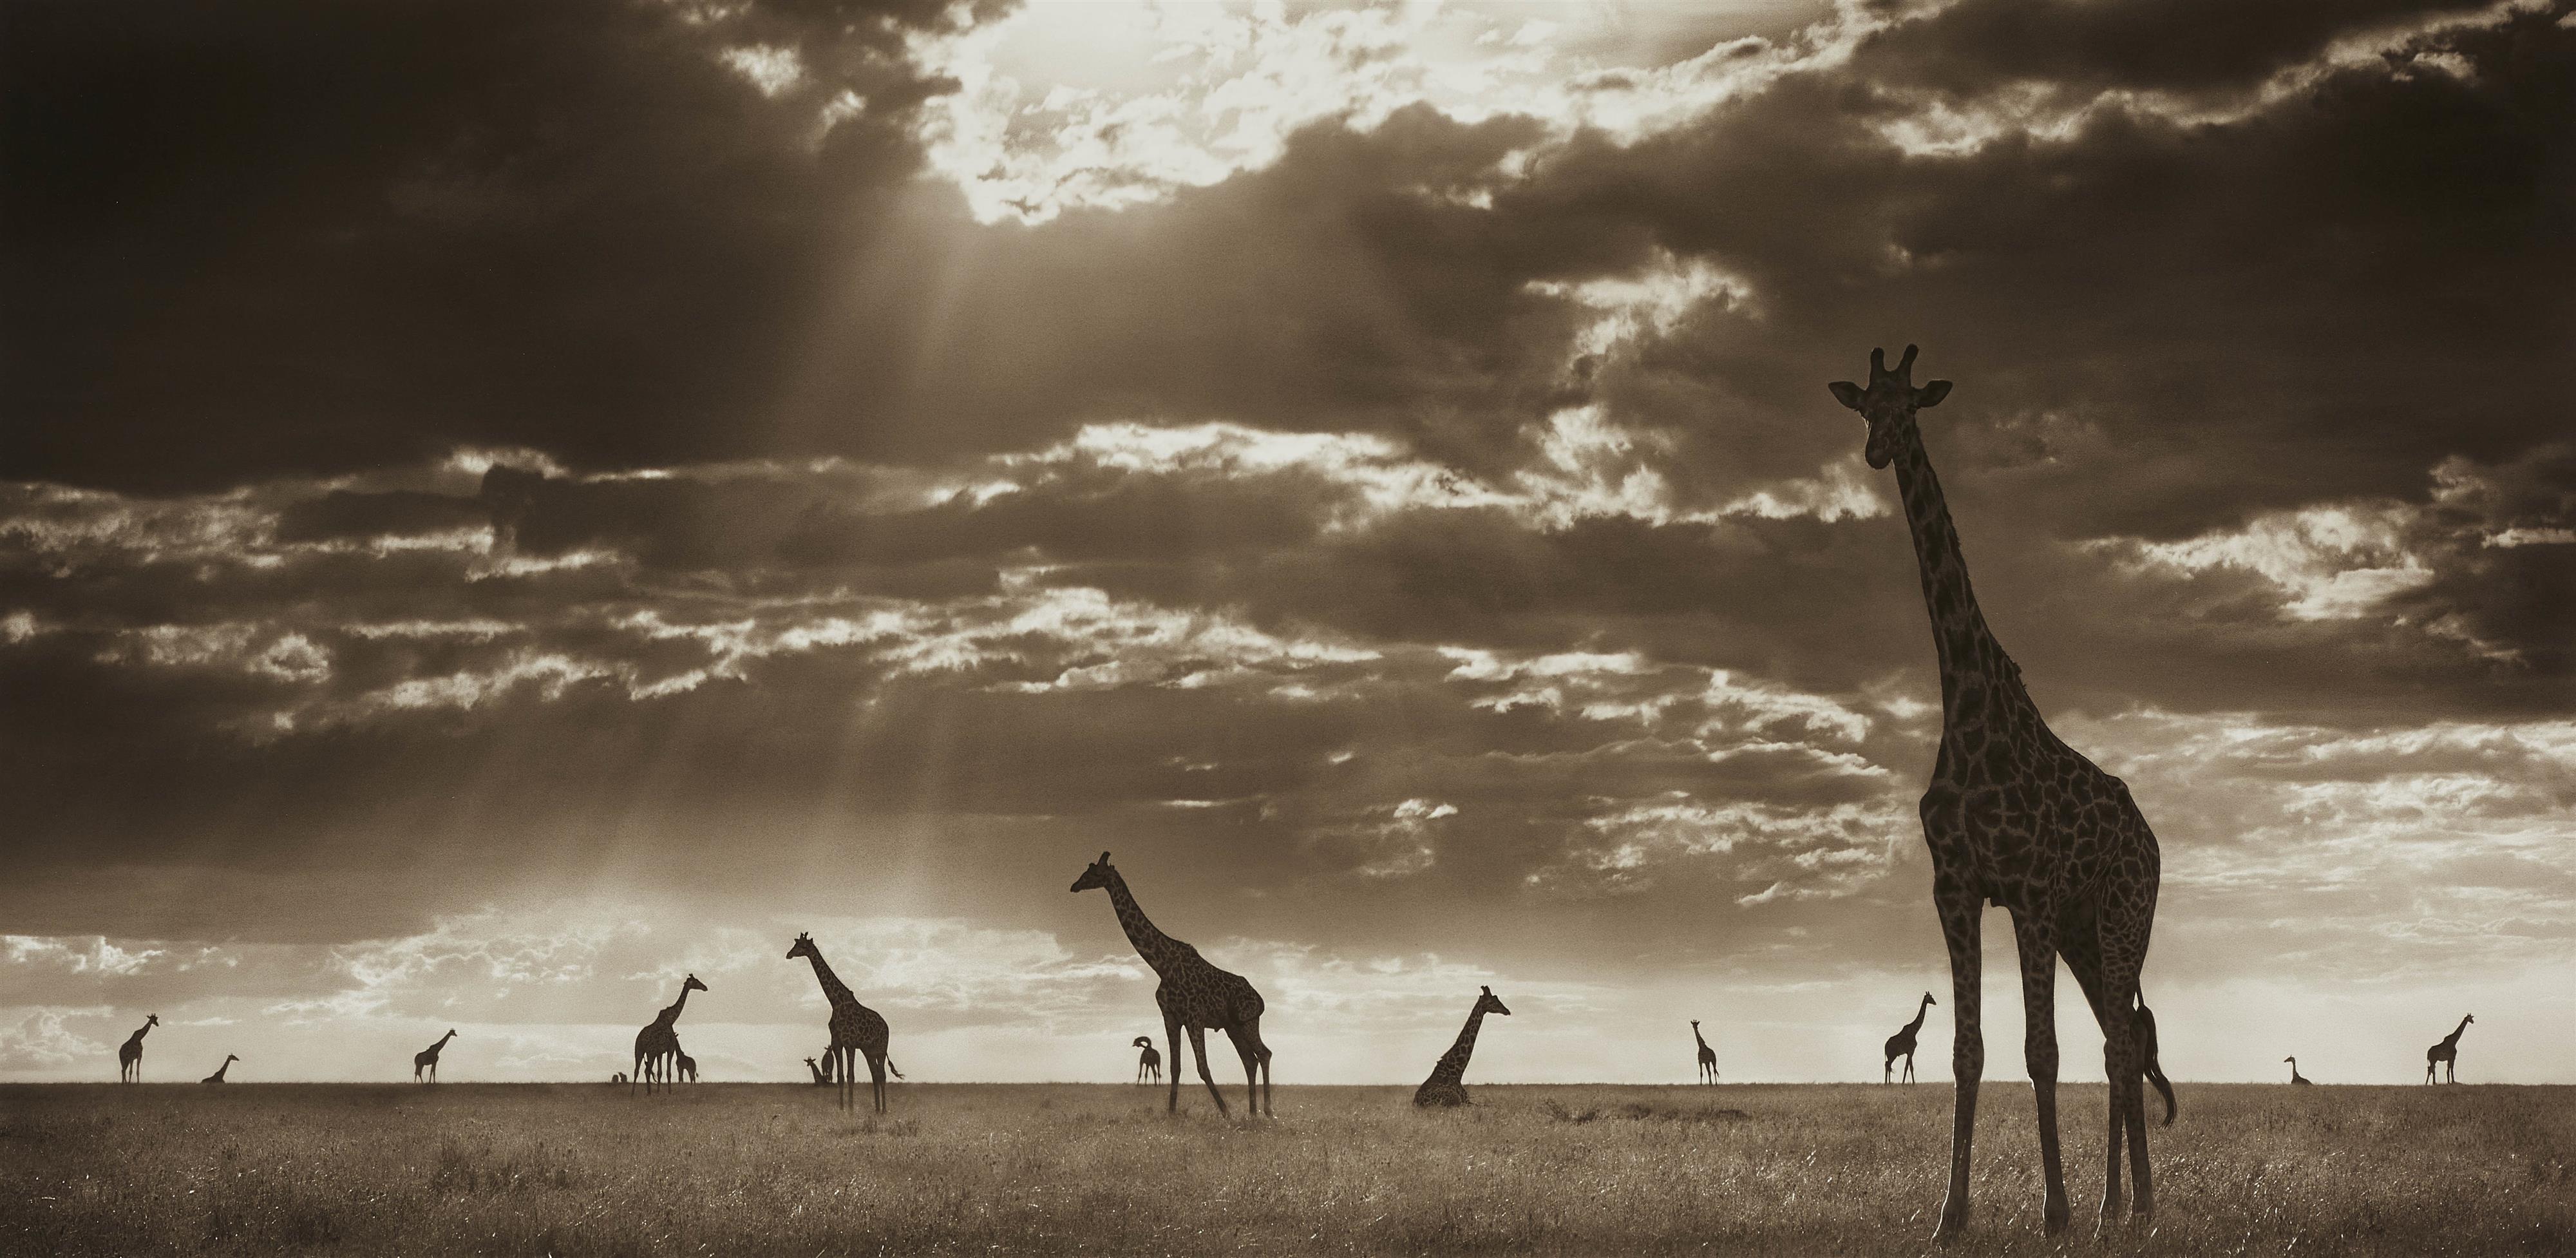 Nick Brandt - Giraffes in Evening Light, Masai Mara